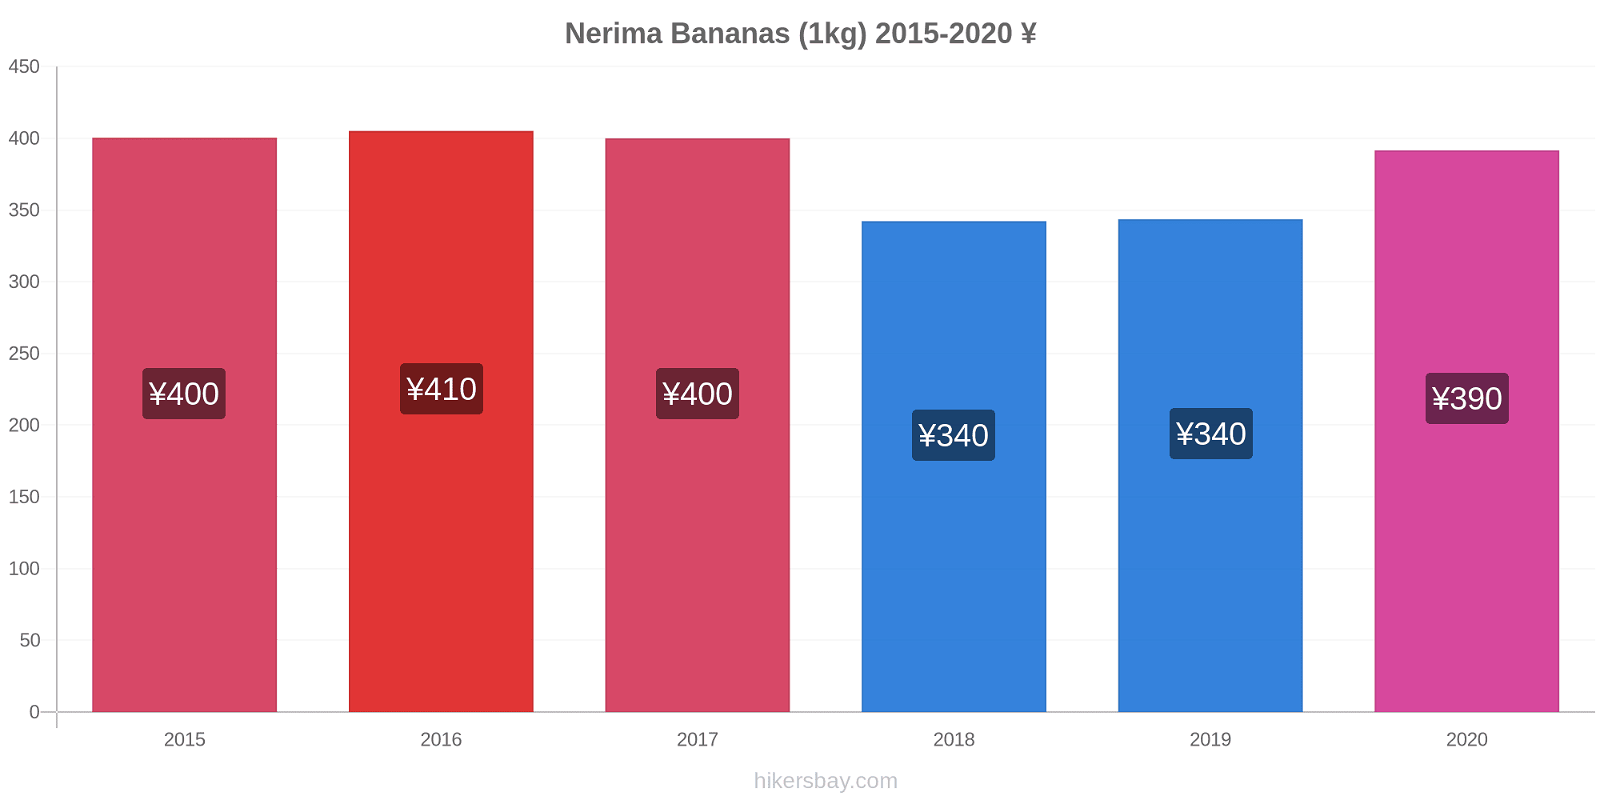 Nerima variação de preço Banana (1kg) hikersbay.com